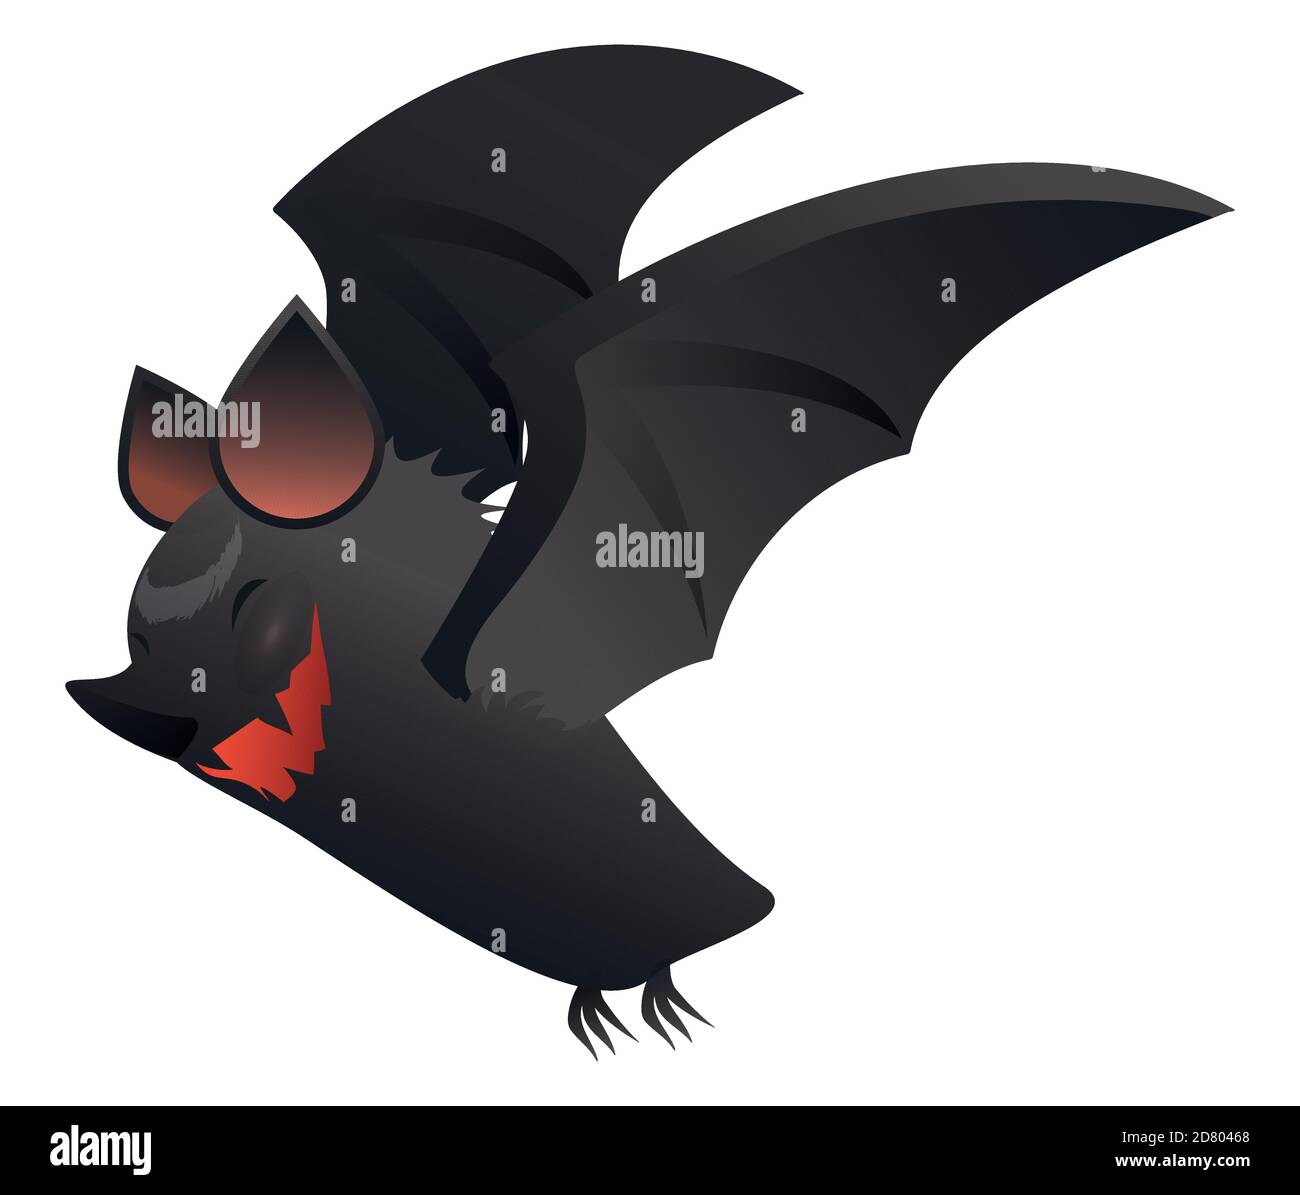 Carattere isolato di bat vampiro con un sorriso feroce, ali spalmabili e pelliccia scura. Illustrazione Vettoriale